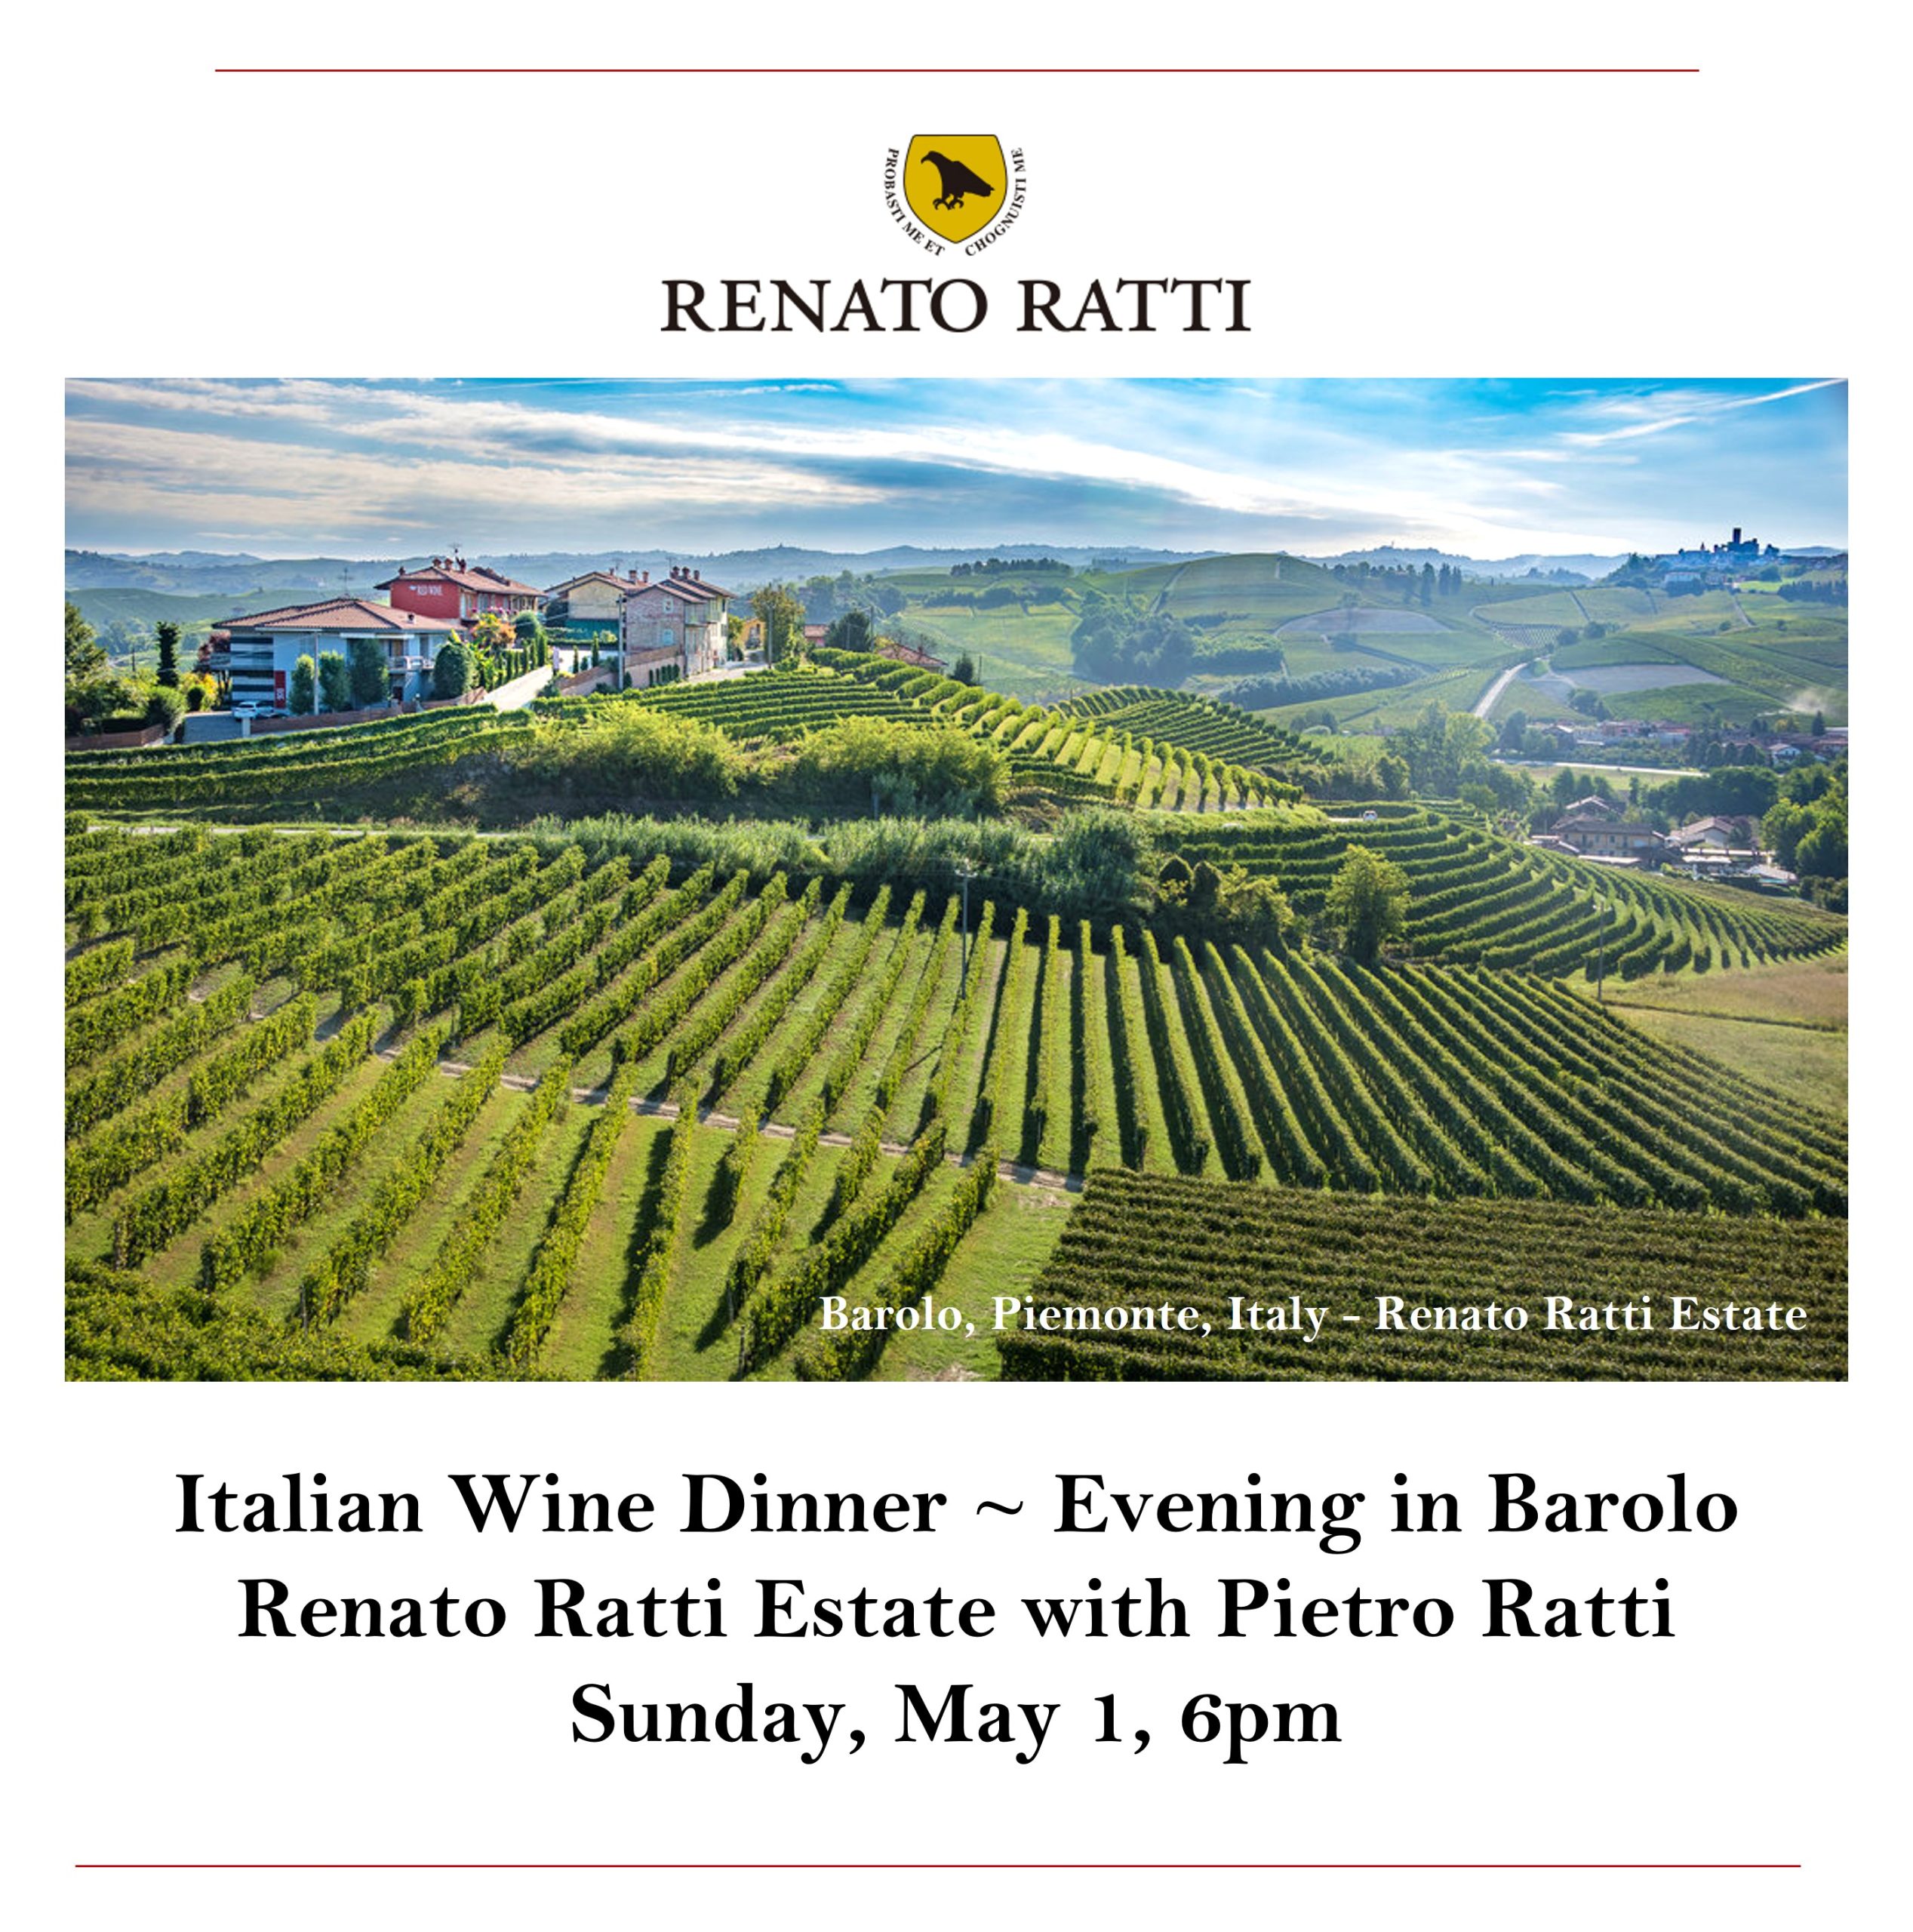 <a id="Solare-Renato-Ratti-Tequila-Dinner"></a>Italian Wine Dinner - An Evening in Barolo with Pietro Ratti